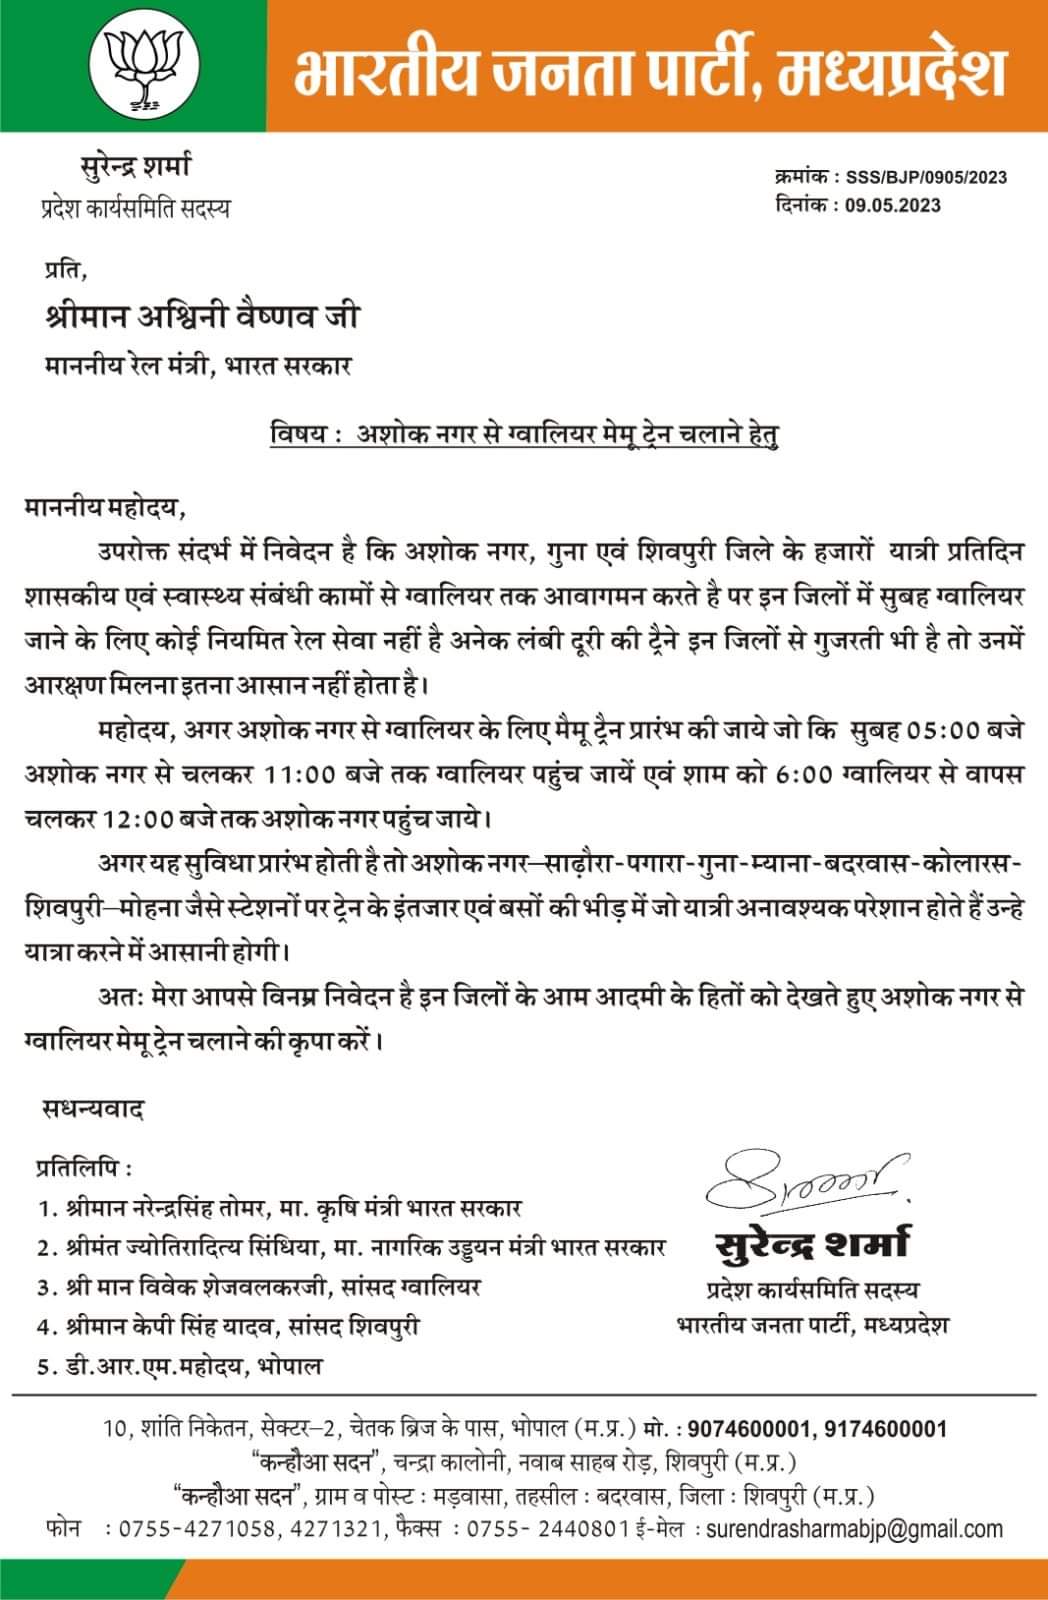 MP News : बीजेपी नेता सुरेंद्र शर्मा ने रेल मंत्री को लिखा पत्र, अशोकनगर से ग्वालियर मेमू ट्रेन चलाने की मांग